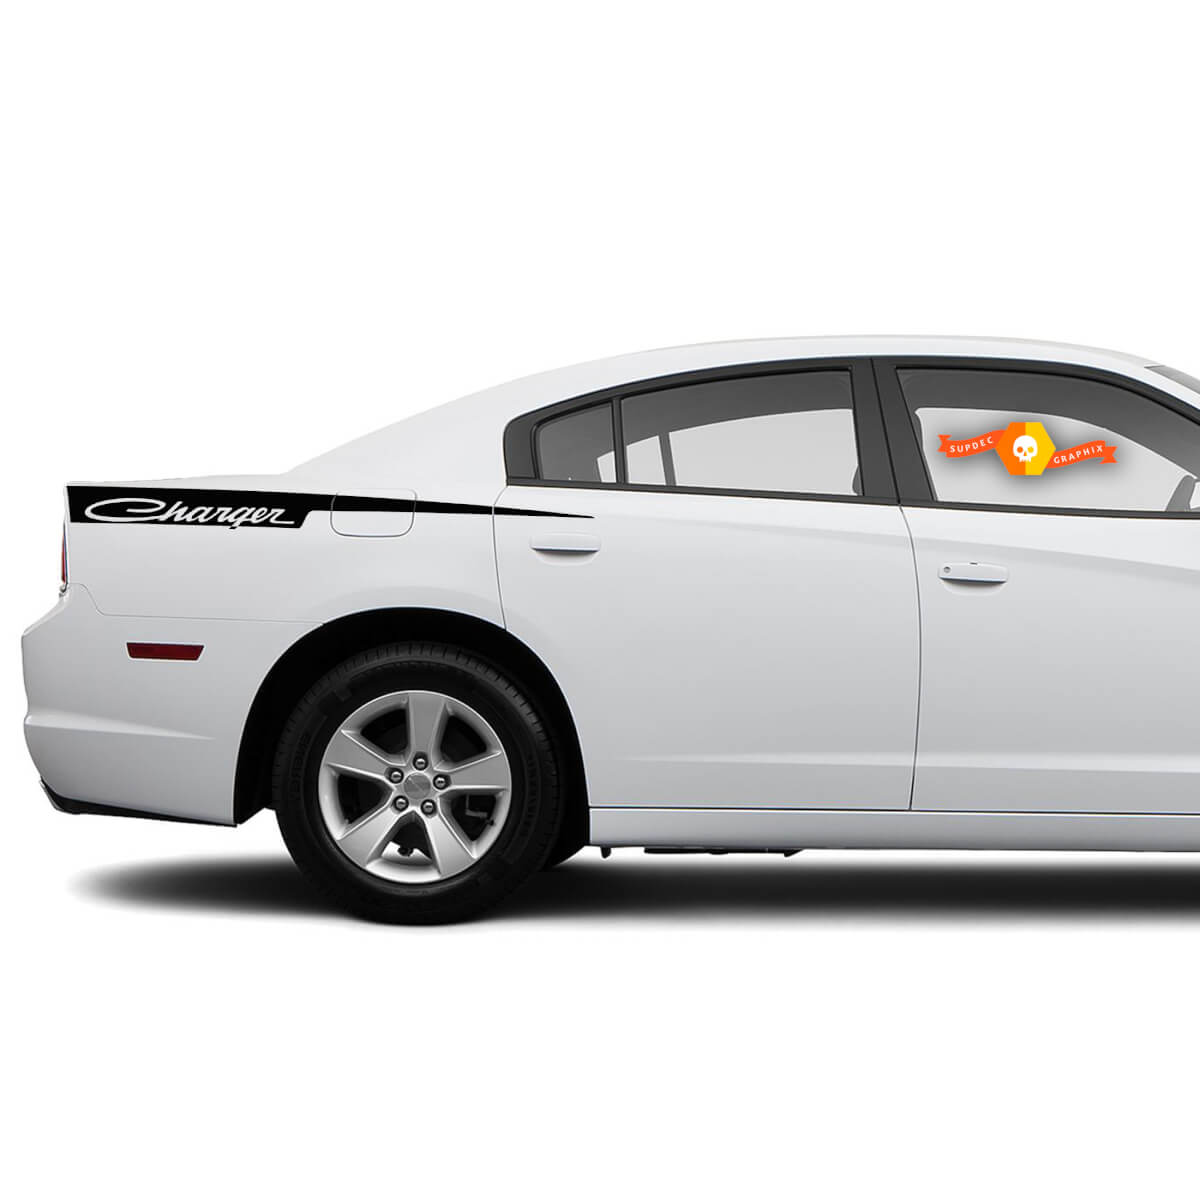 Dodge Charger Retro Big Rasiermesser Aufkleber Aufkleber Seite Grafiken passt zu Modellen 2011-2014